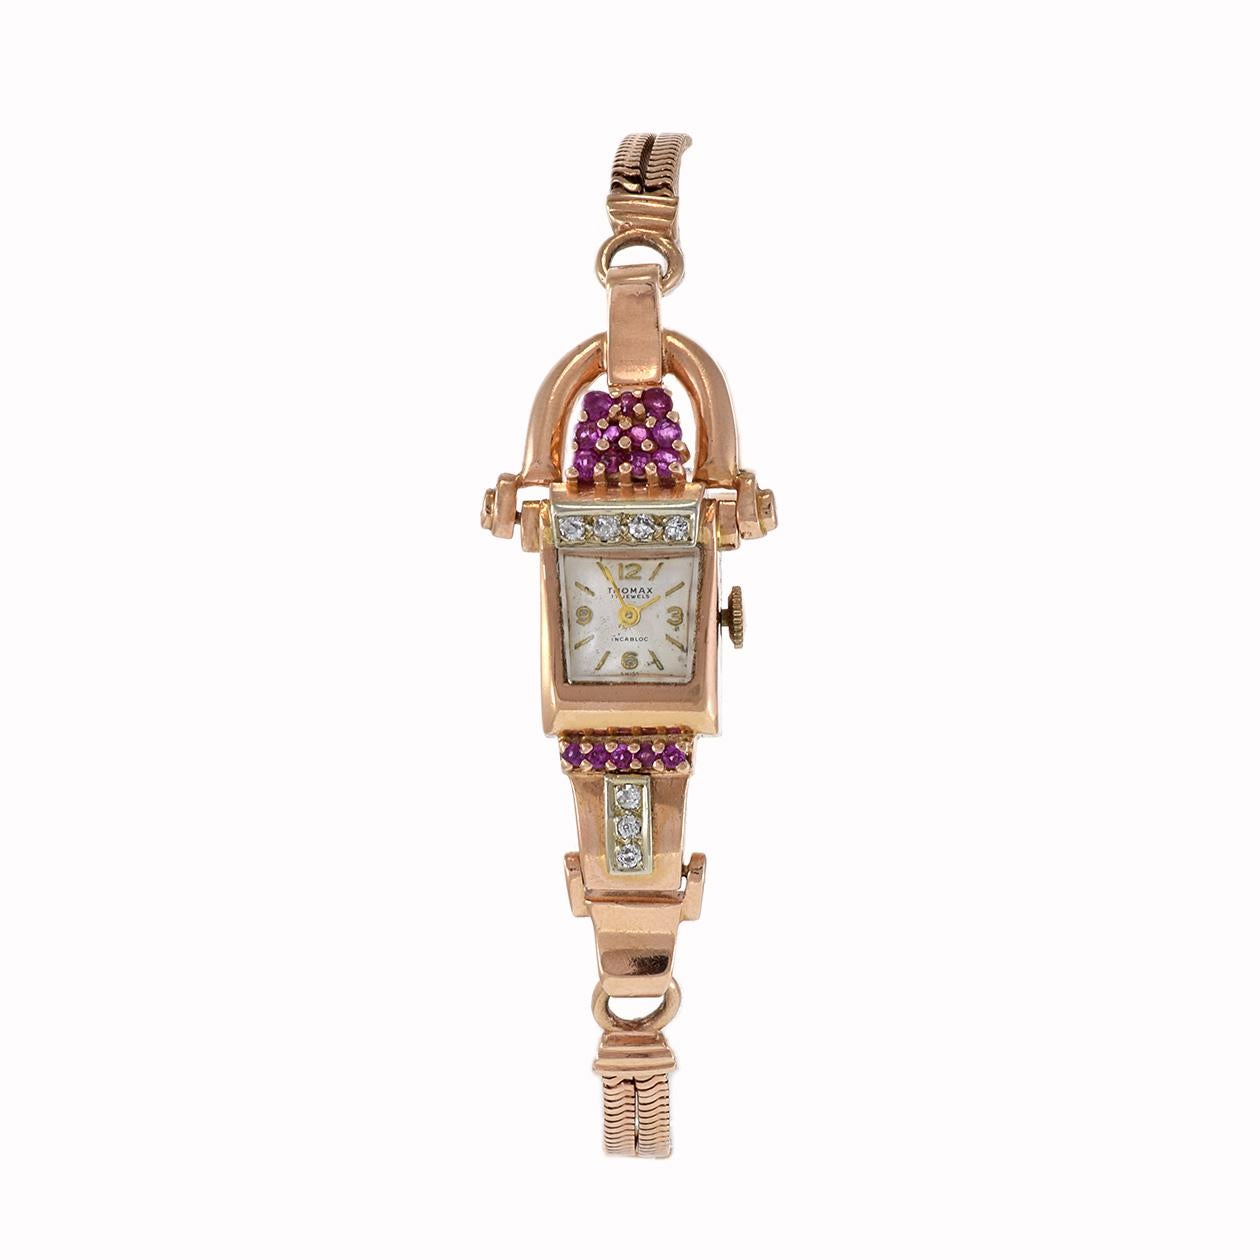 Die exquisite Thomax 1950's Ladies Ruby and Diamond Cocktail Watch ist eine zeitlose Verkörperung von Luxus und Eleganz. Dieser mit Präzision gefertigte Zeitmesser besticht durch sein Gehäuse und Armband aus 14-karätigem Rotgold, das mit strahlenden